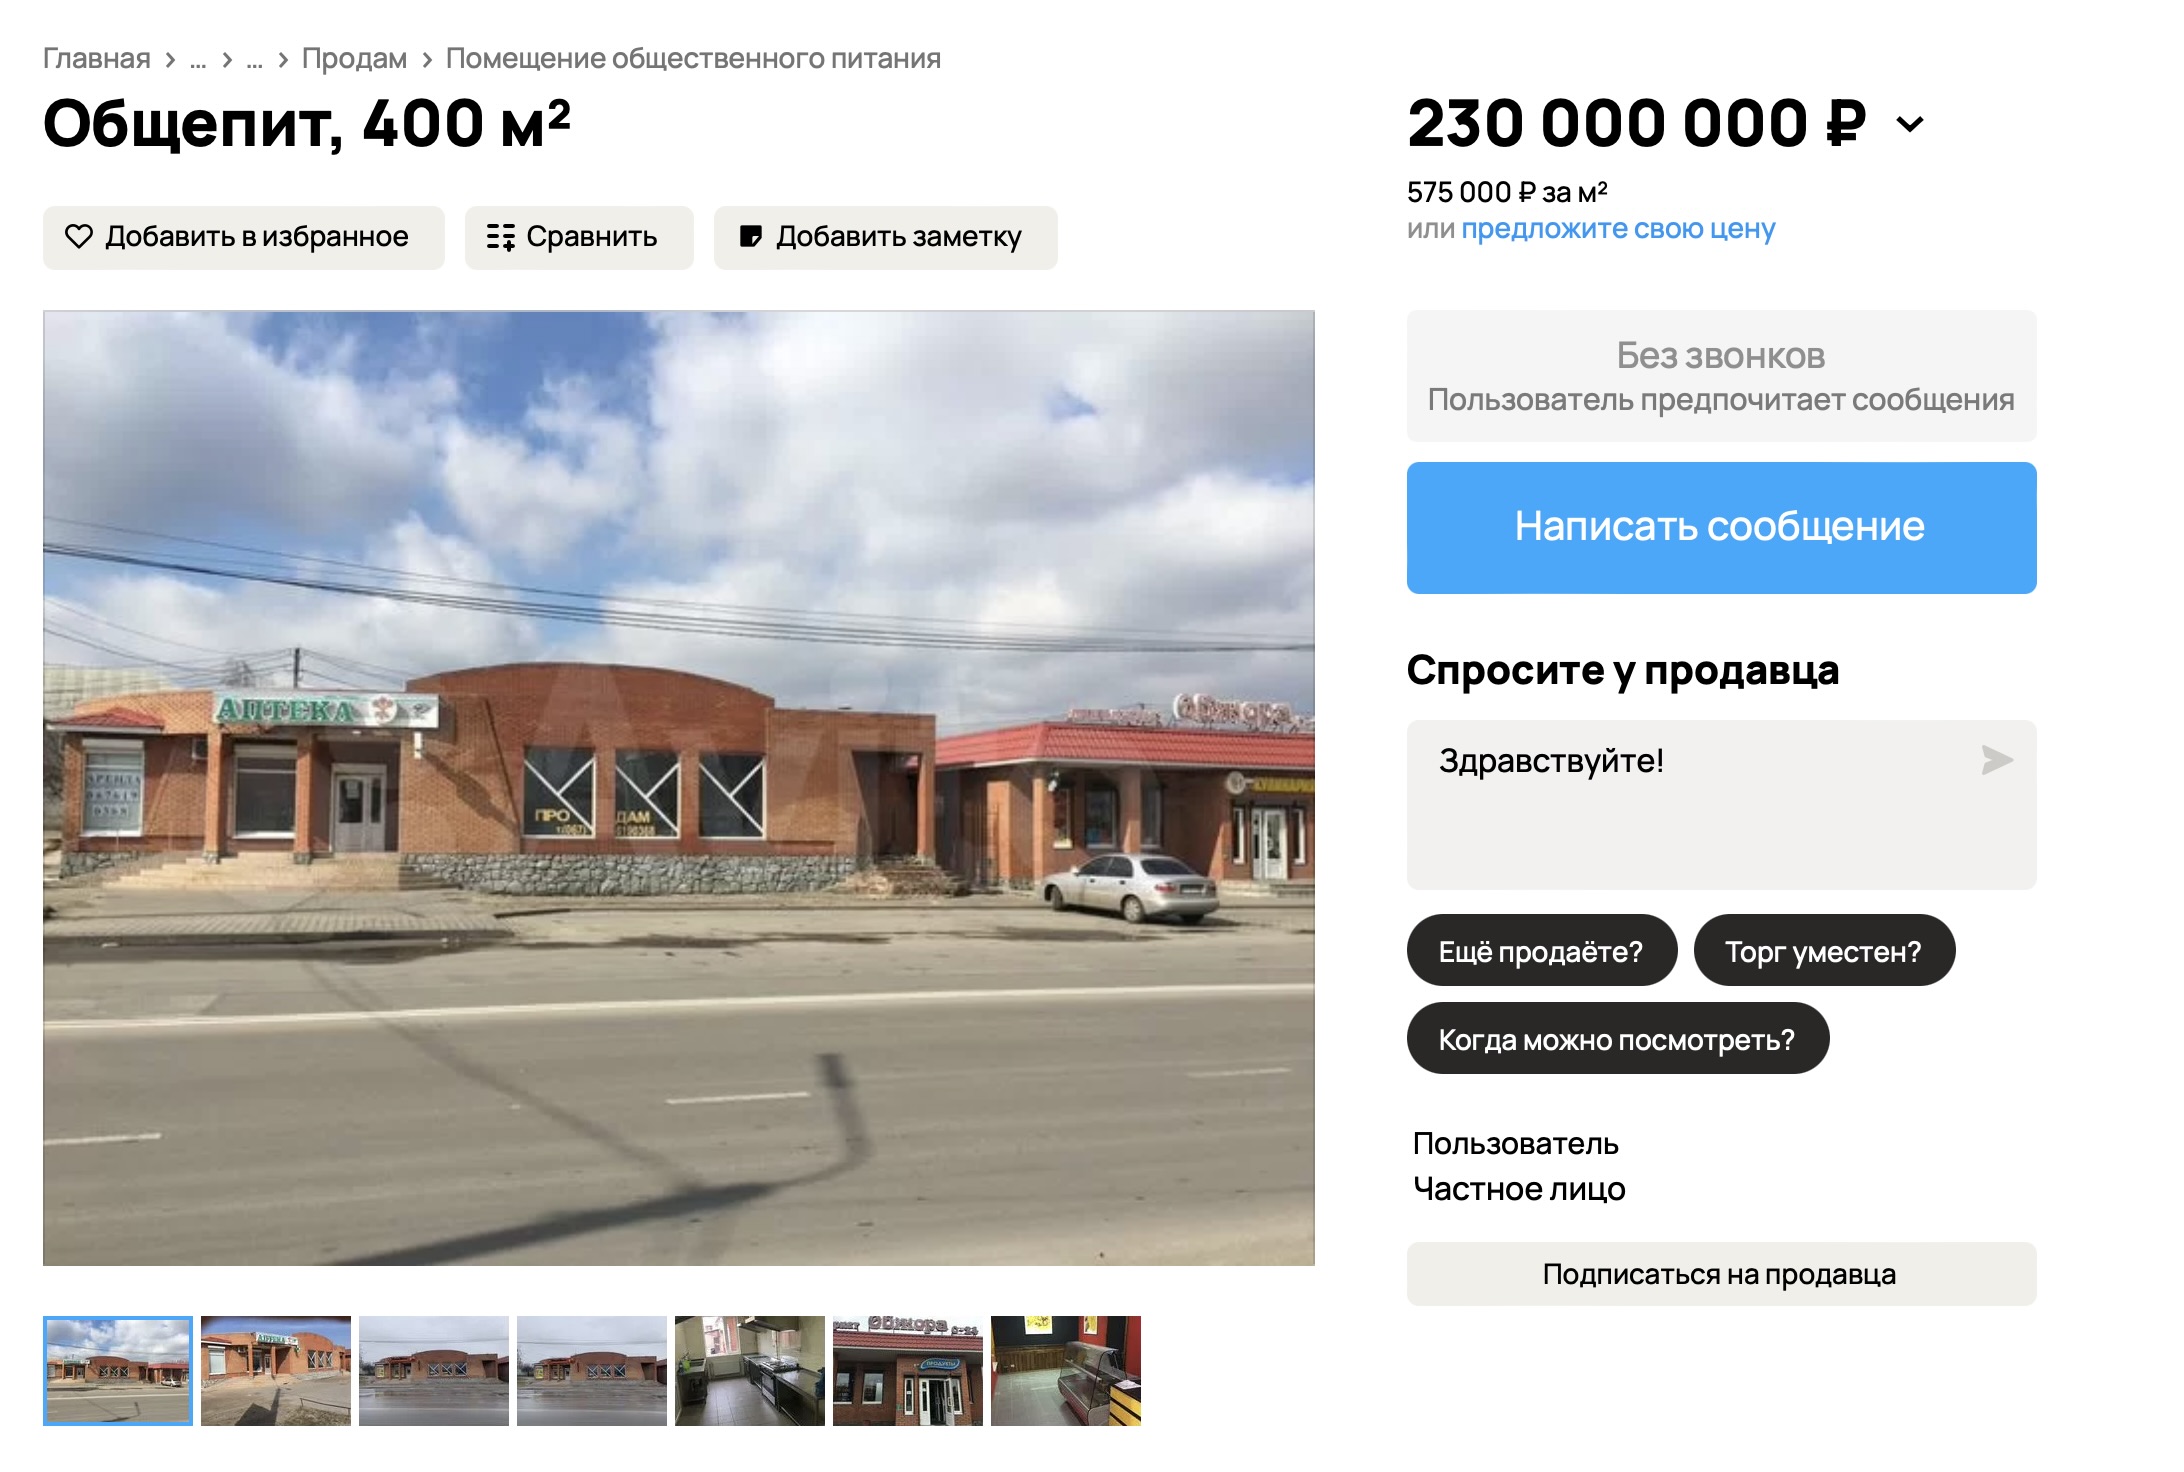 В Мелитополе пособник оккупантов продает свой бизнес за 230 миллионов рублей 2